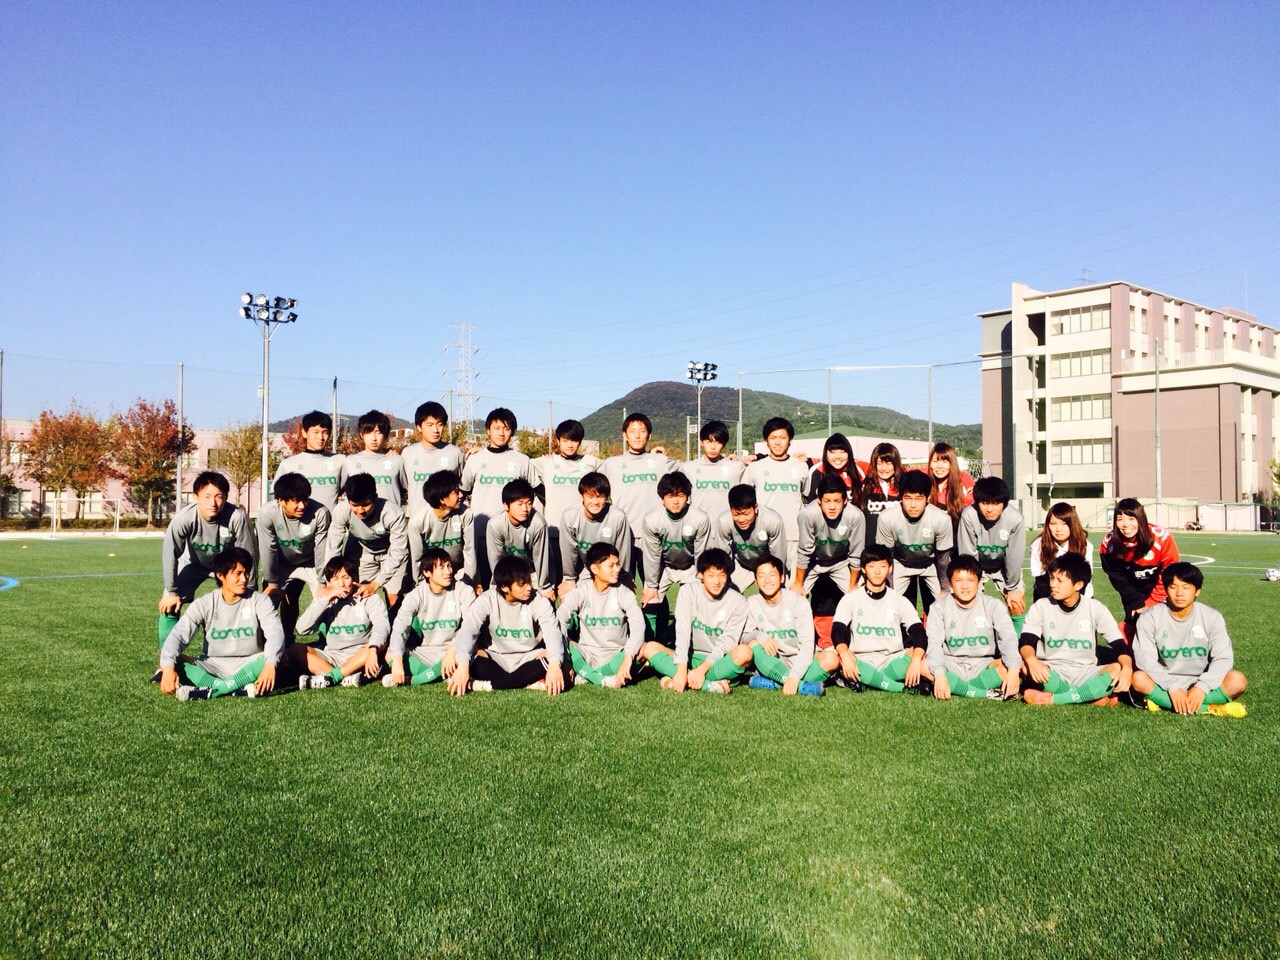 関西福祉大学サッカー部が創部1年目で関西学生サッカー2部Bリーグに昇格決定